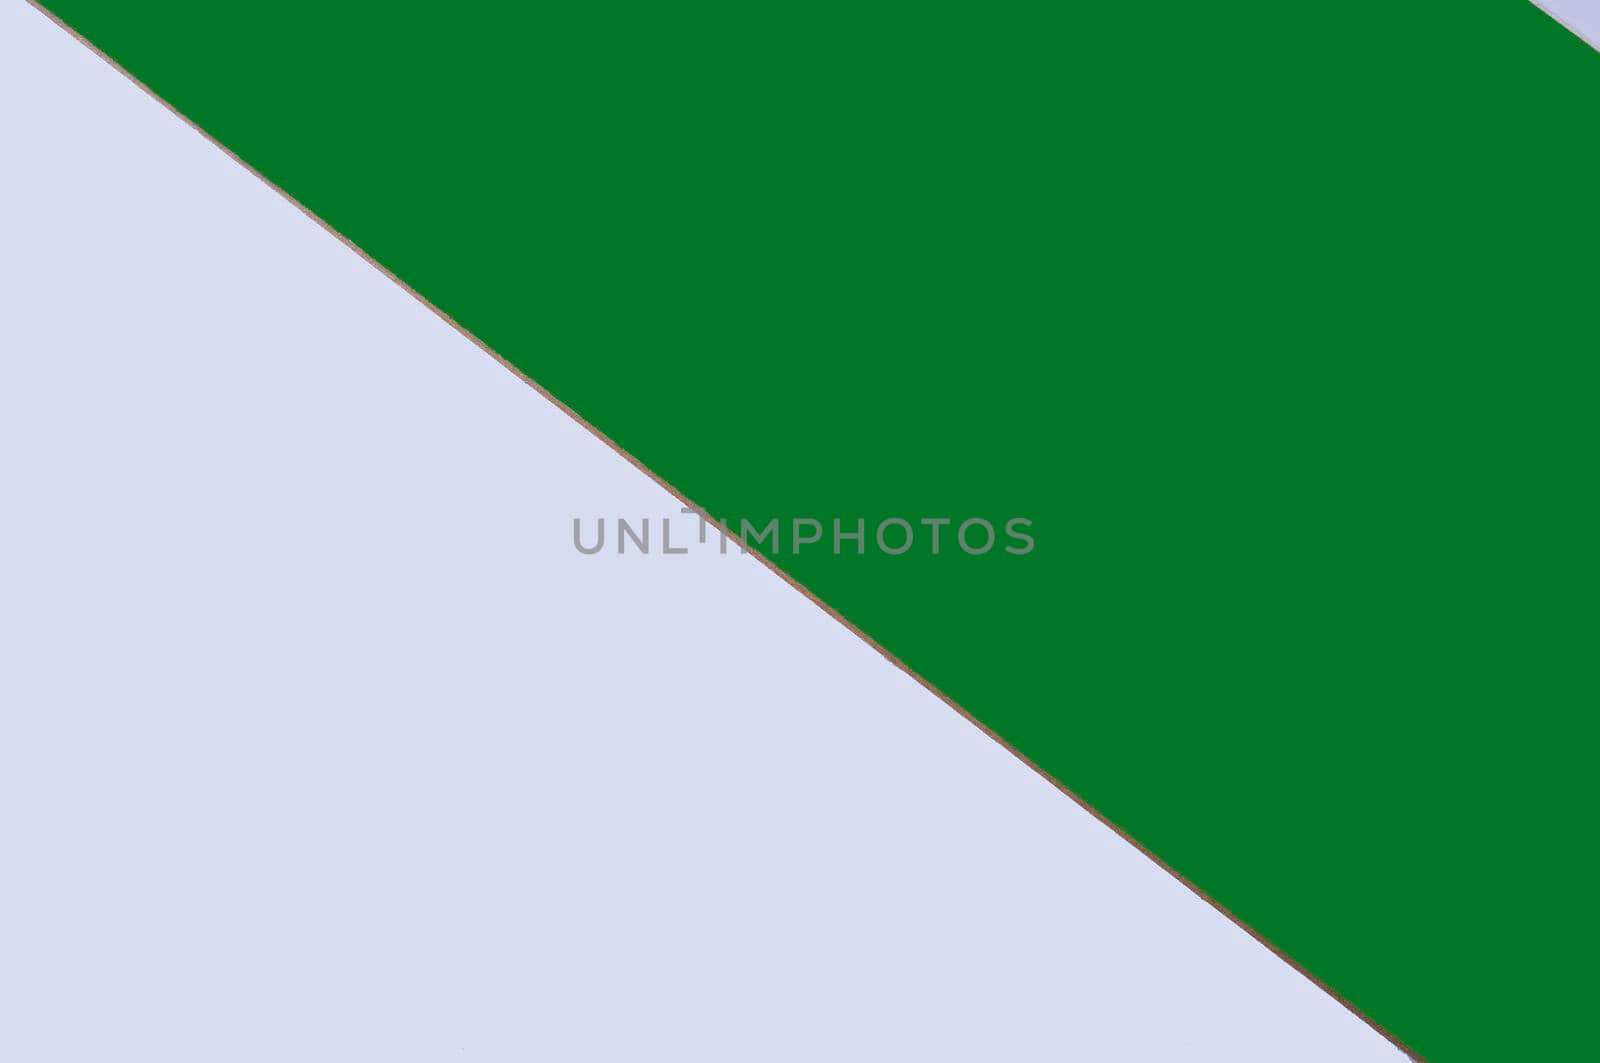 White and green triangular background by raul_ruiz